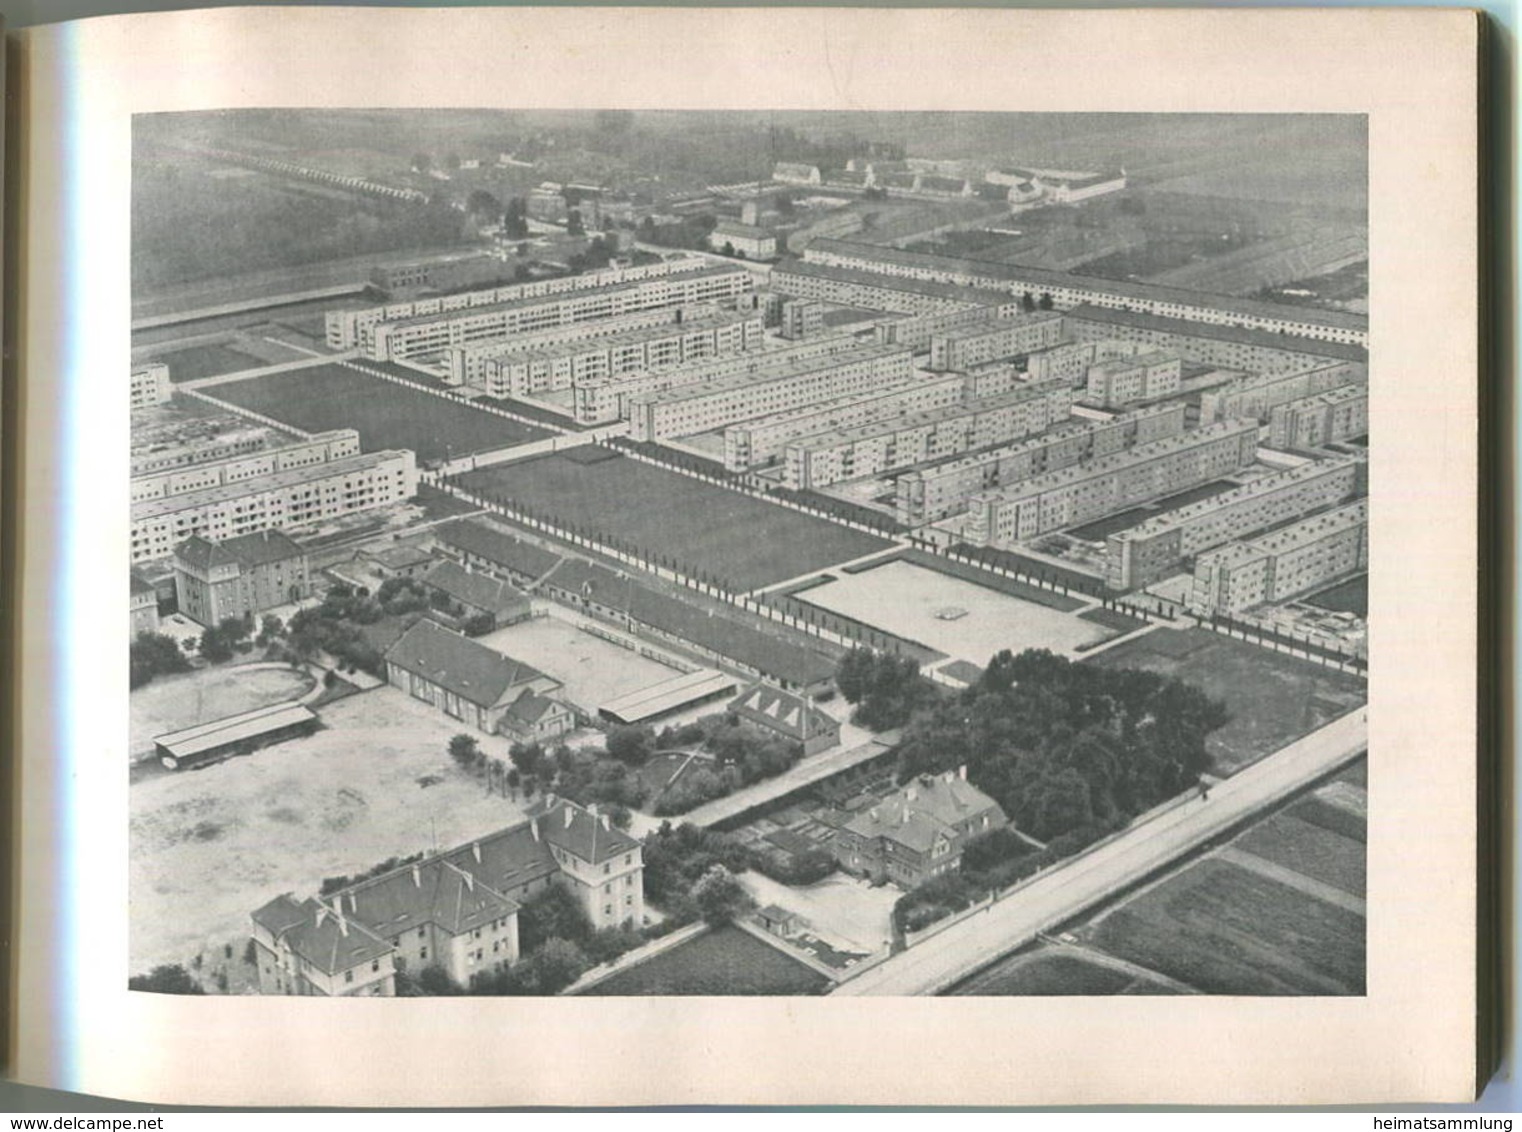 Magdeburg 1928 - 35 Teils Ganzseitige Abbildungen Mit Erläuterungen - Herausgegeben Vom Wirtschaftsamt Der Stadt Magdebu - Saxe-Anhalt